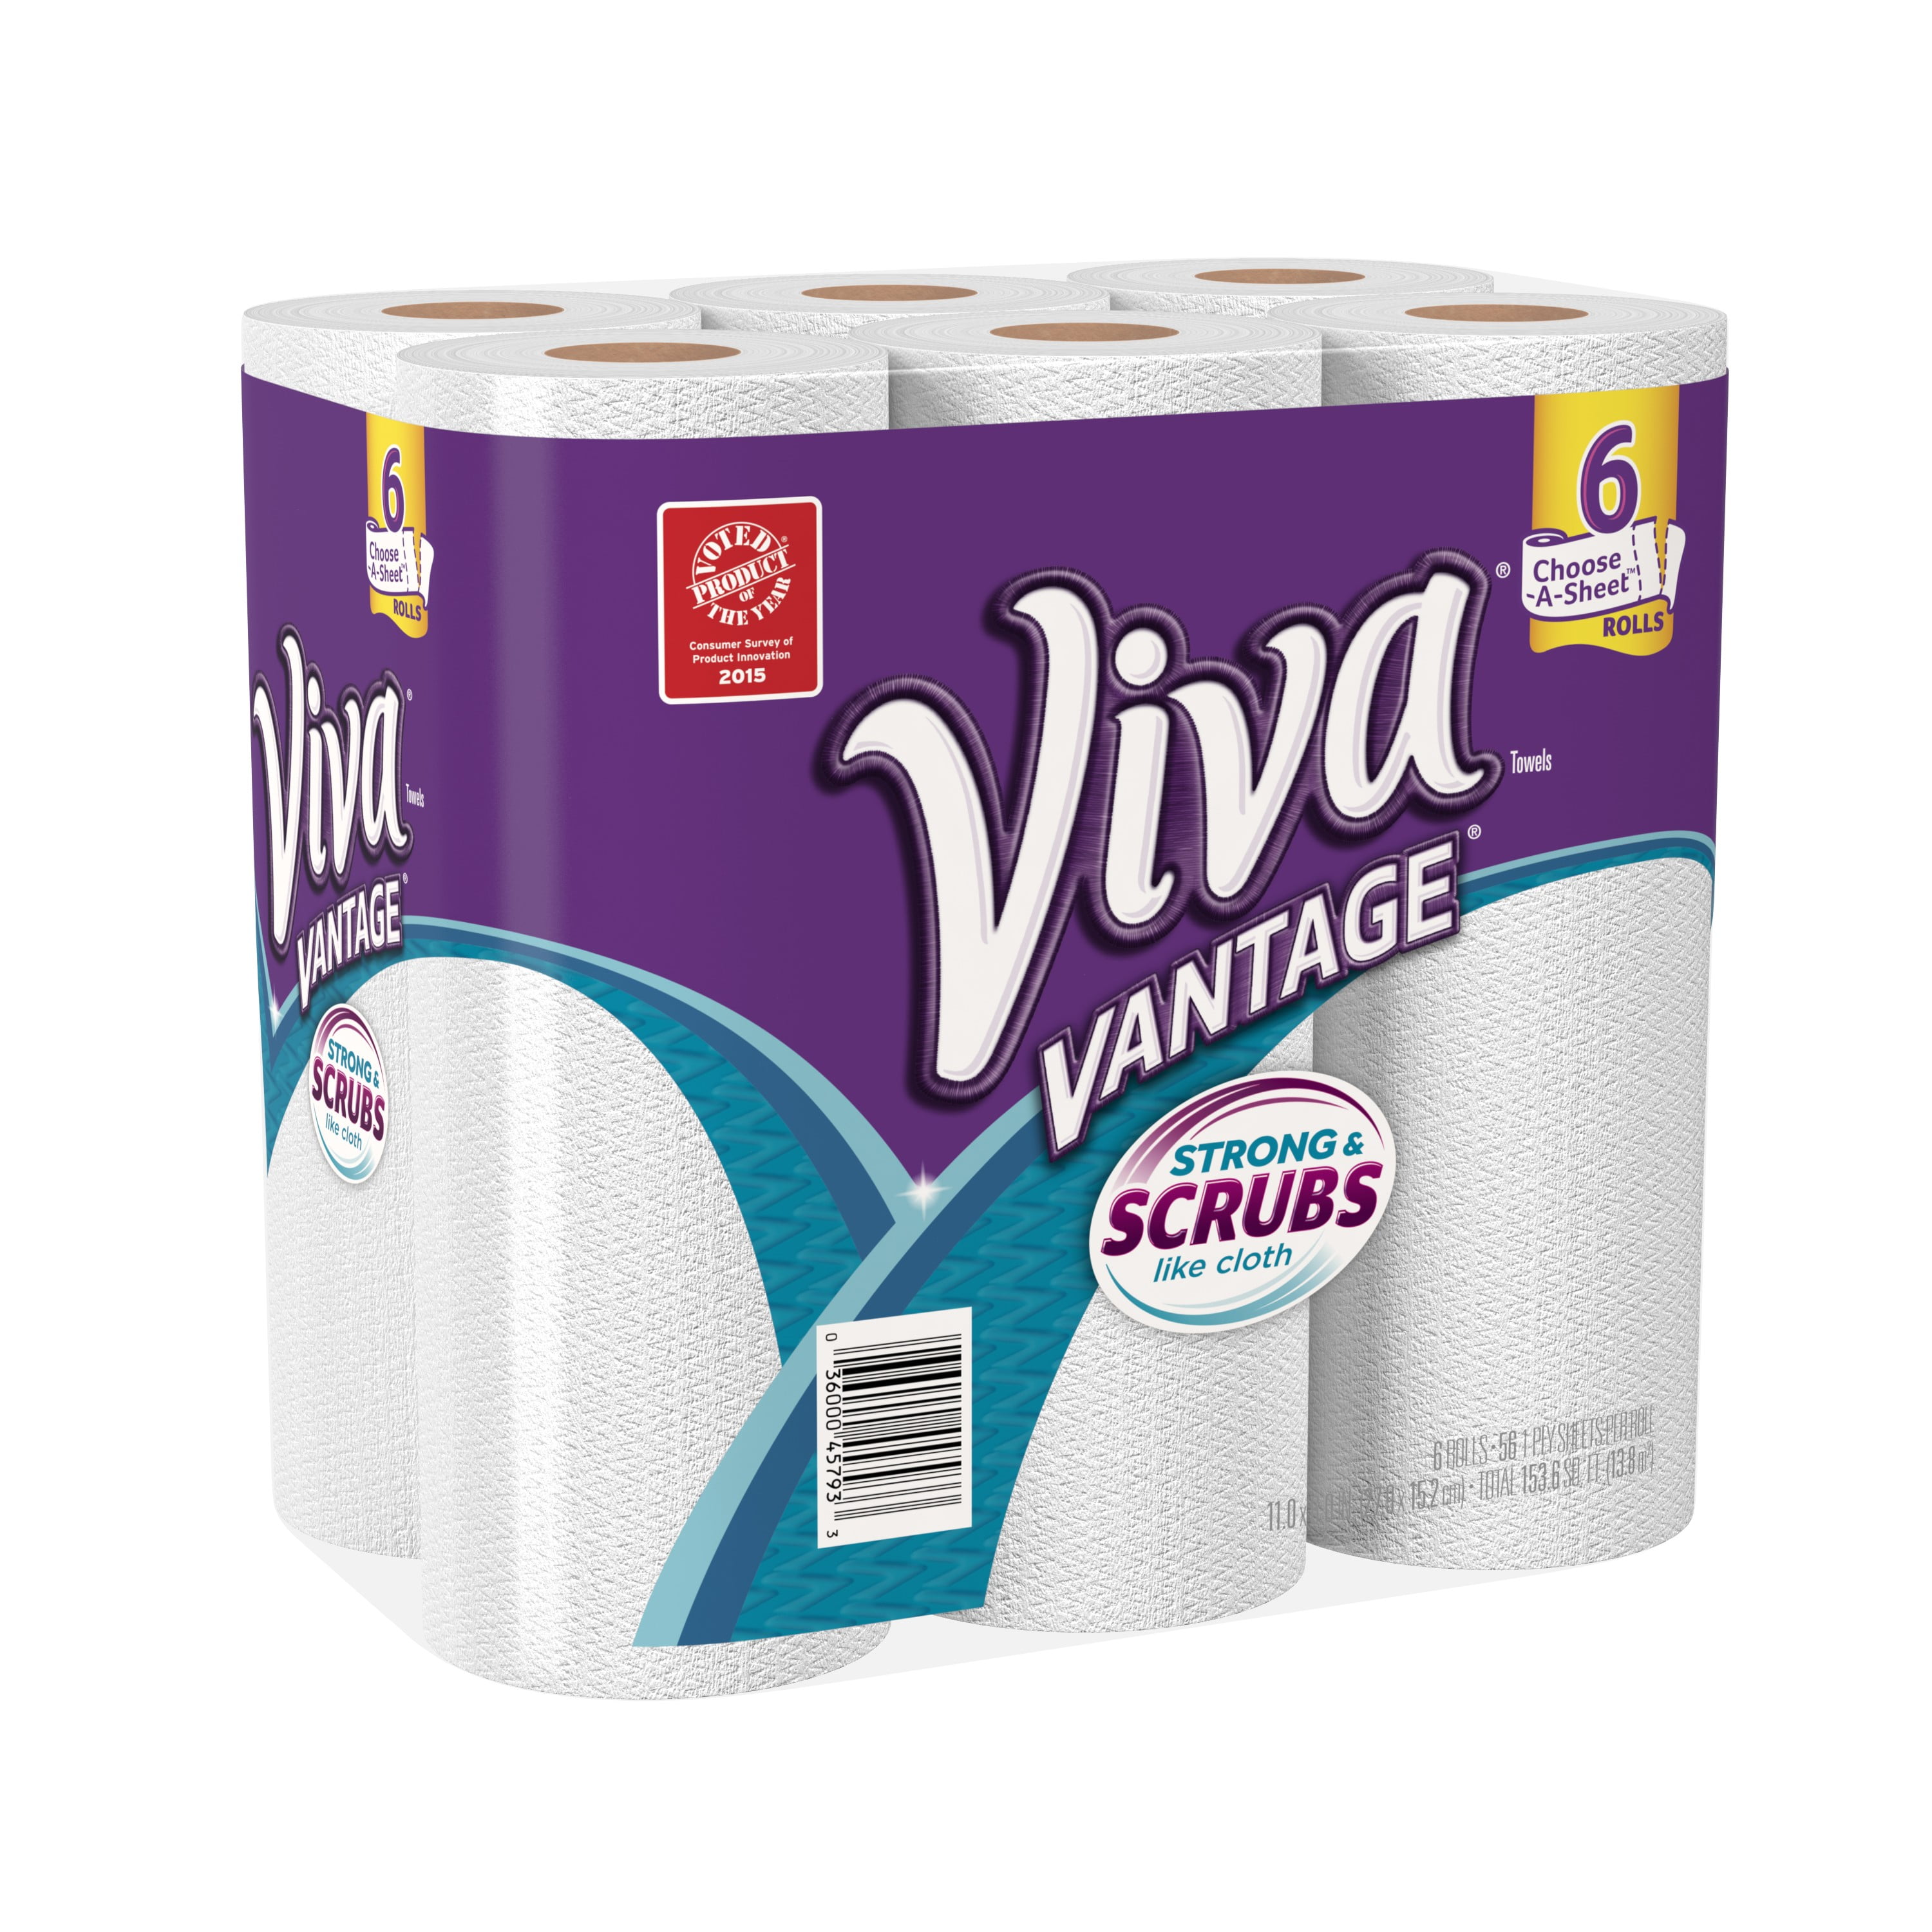 Viva Paper Towel Vantage Choose A Size 6CT